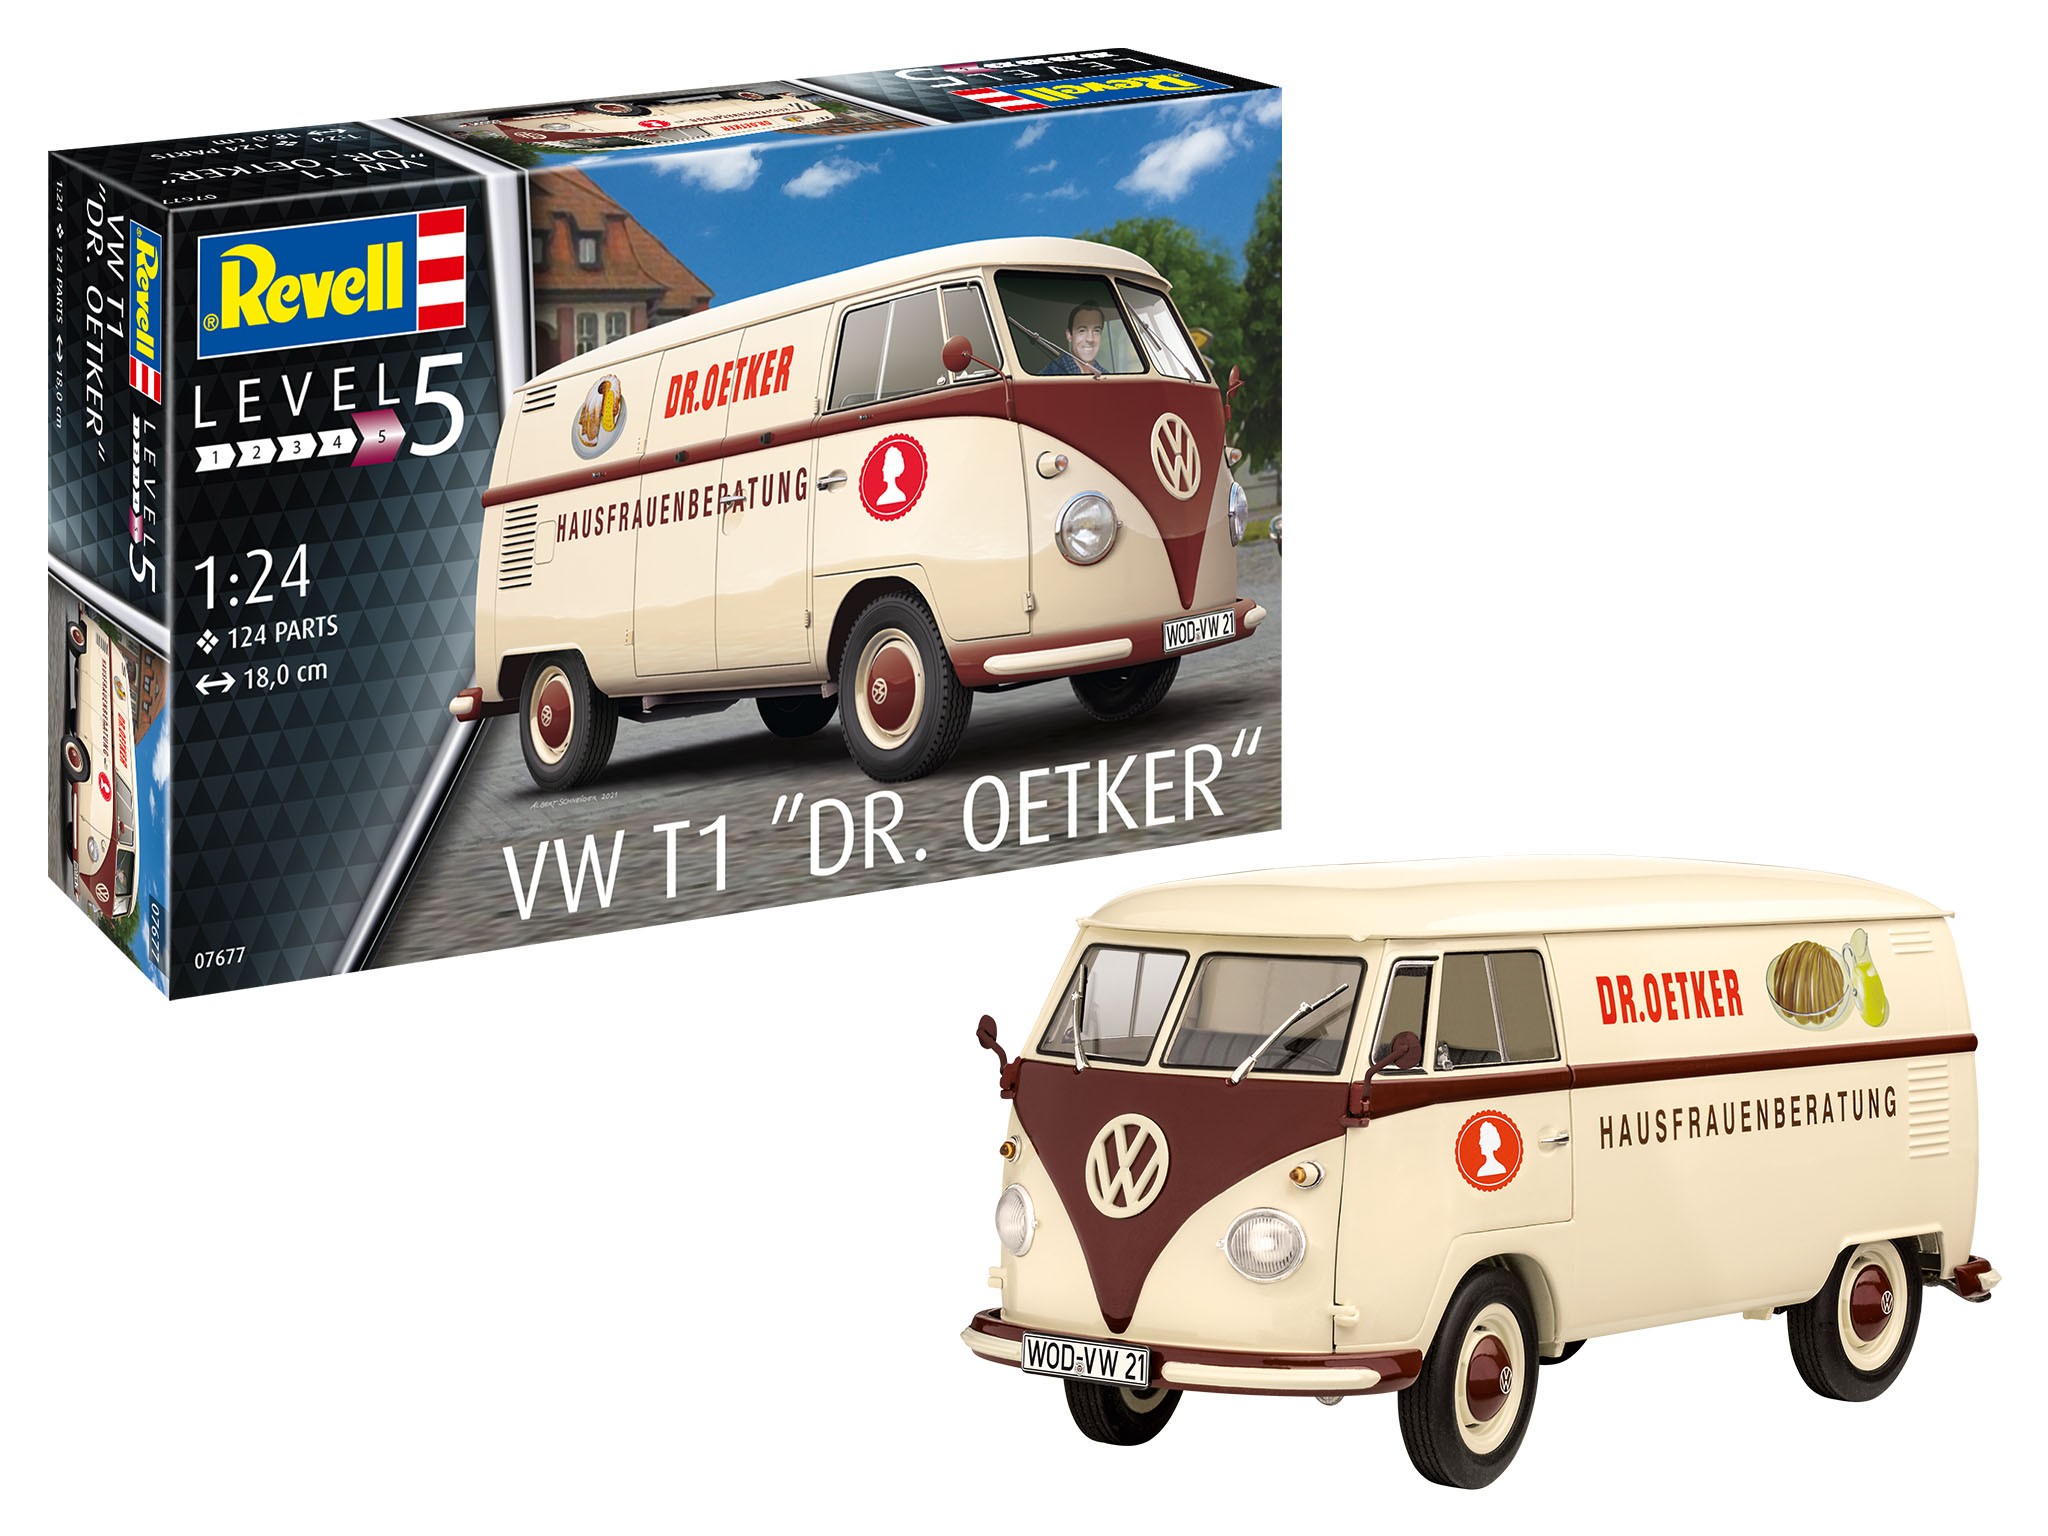 Revell 07677 VW T1 "Dr. Oetker" 1:24